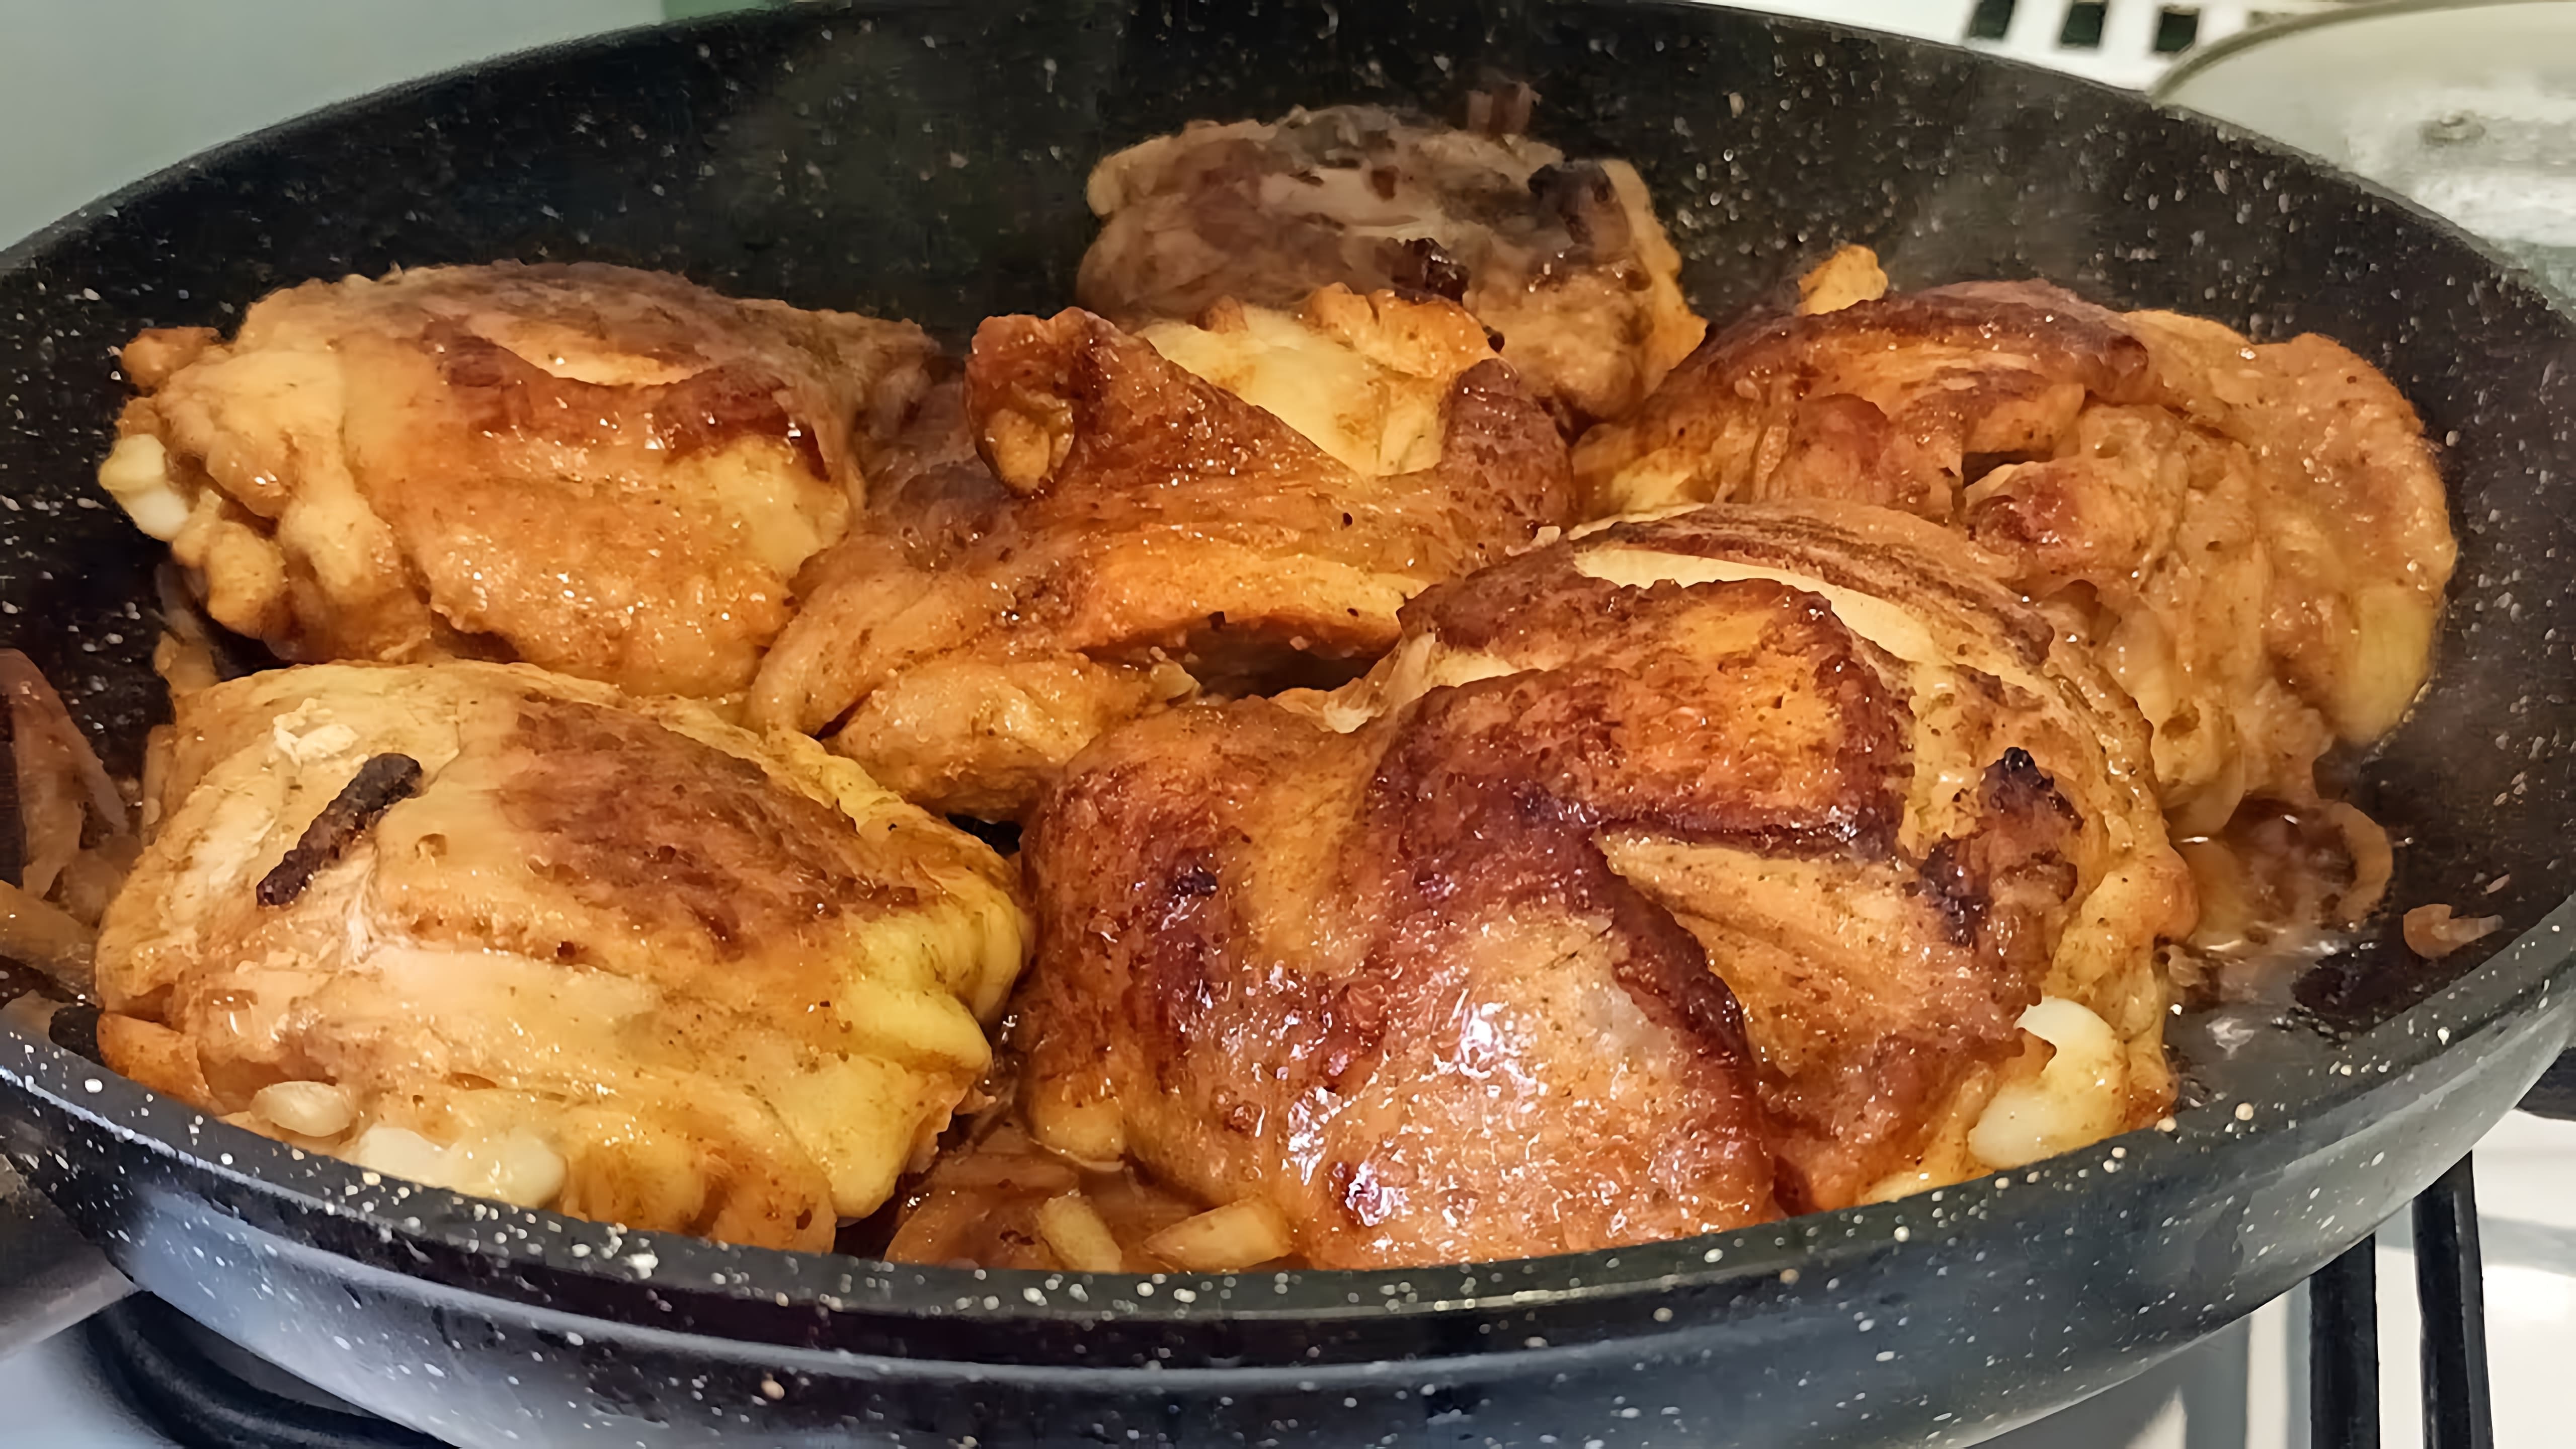 Видео рецепт приготовления куриных бедер в сковороде, которые описываются как более вкусные, чем приготовление их в духовке